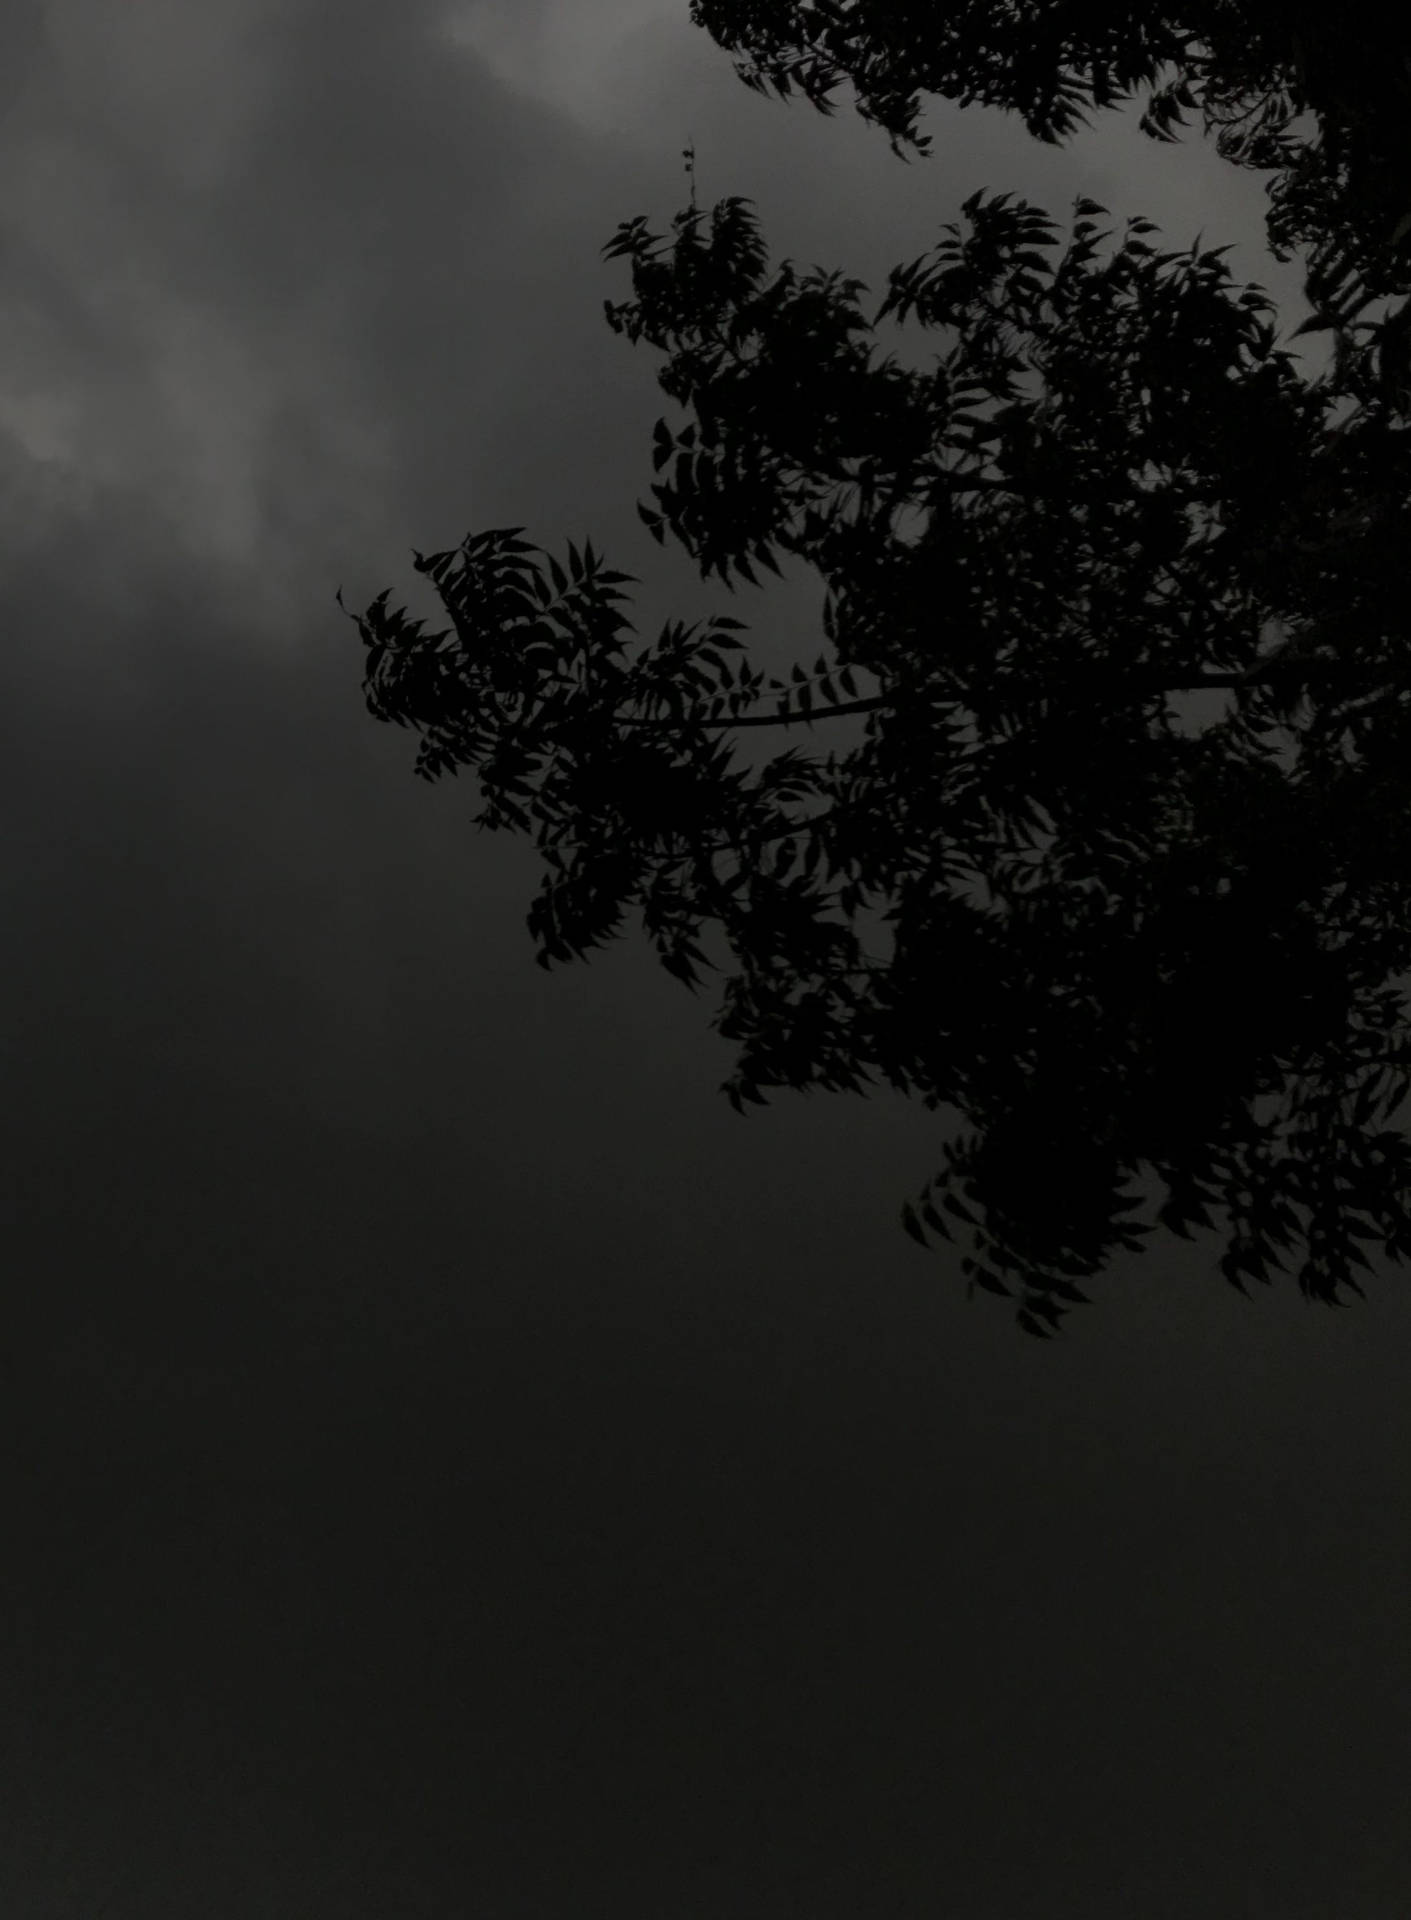 Dark Theme Tree Silhouette Cloudy Night